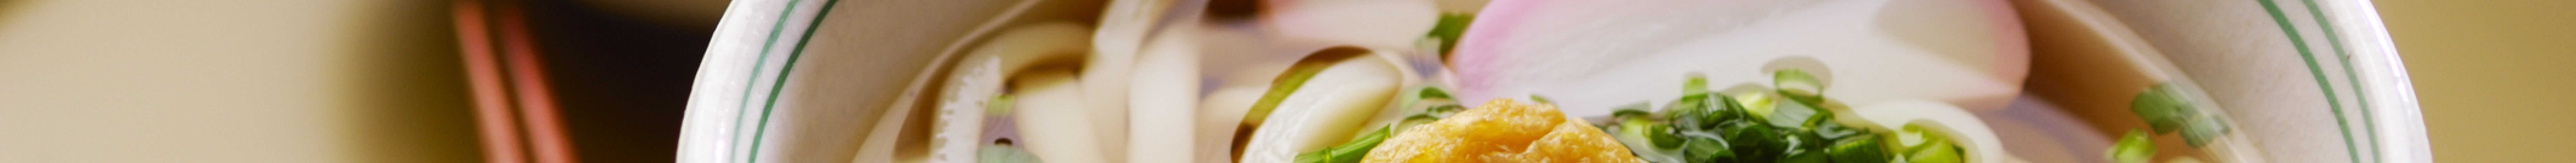 Nézd meg a galériában, milyen japán leveseket érdemes kipróbálnod